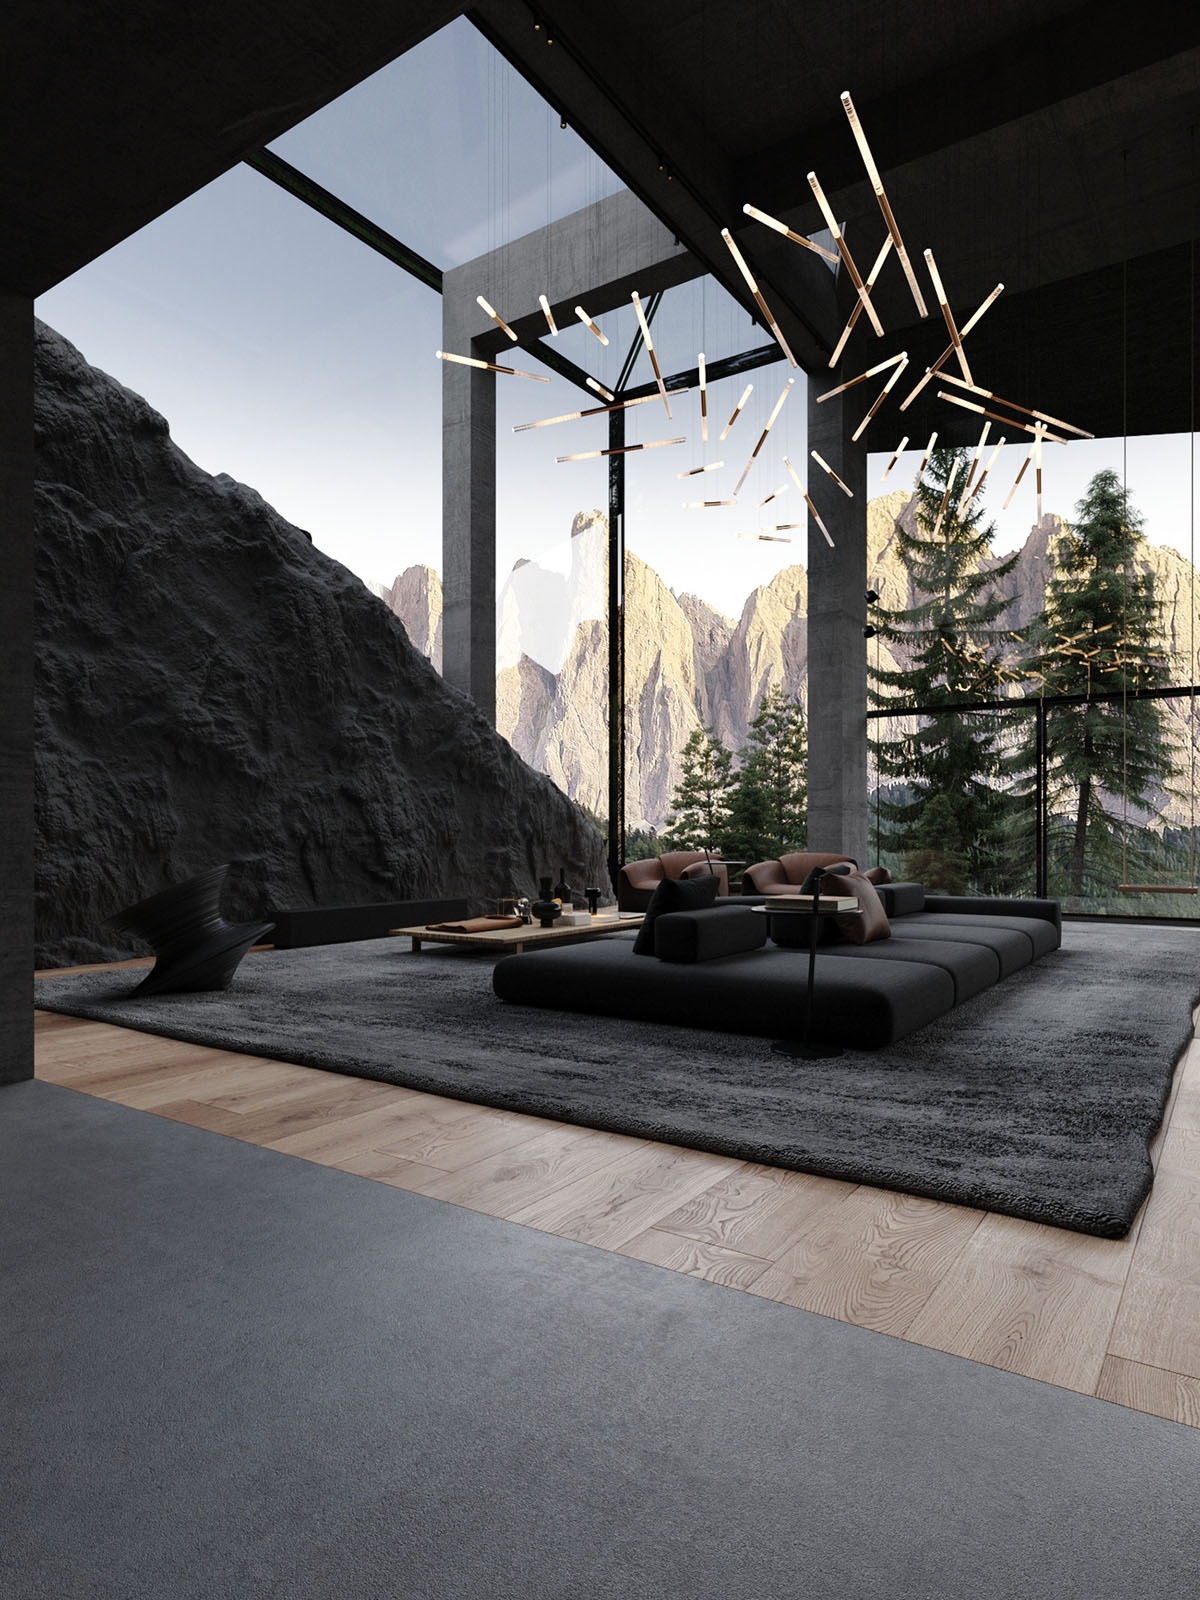 Diseño innovador: la casa del futuro en la ladera de una montaña 4